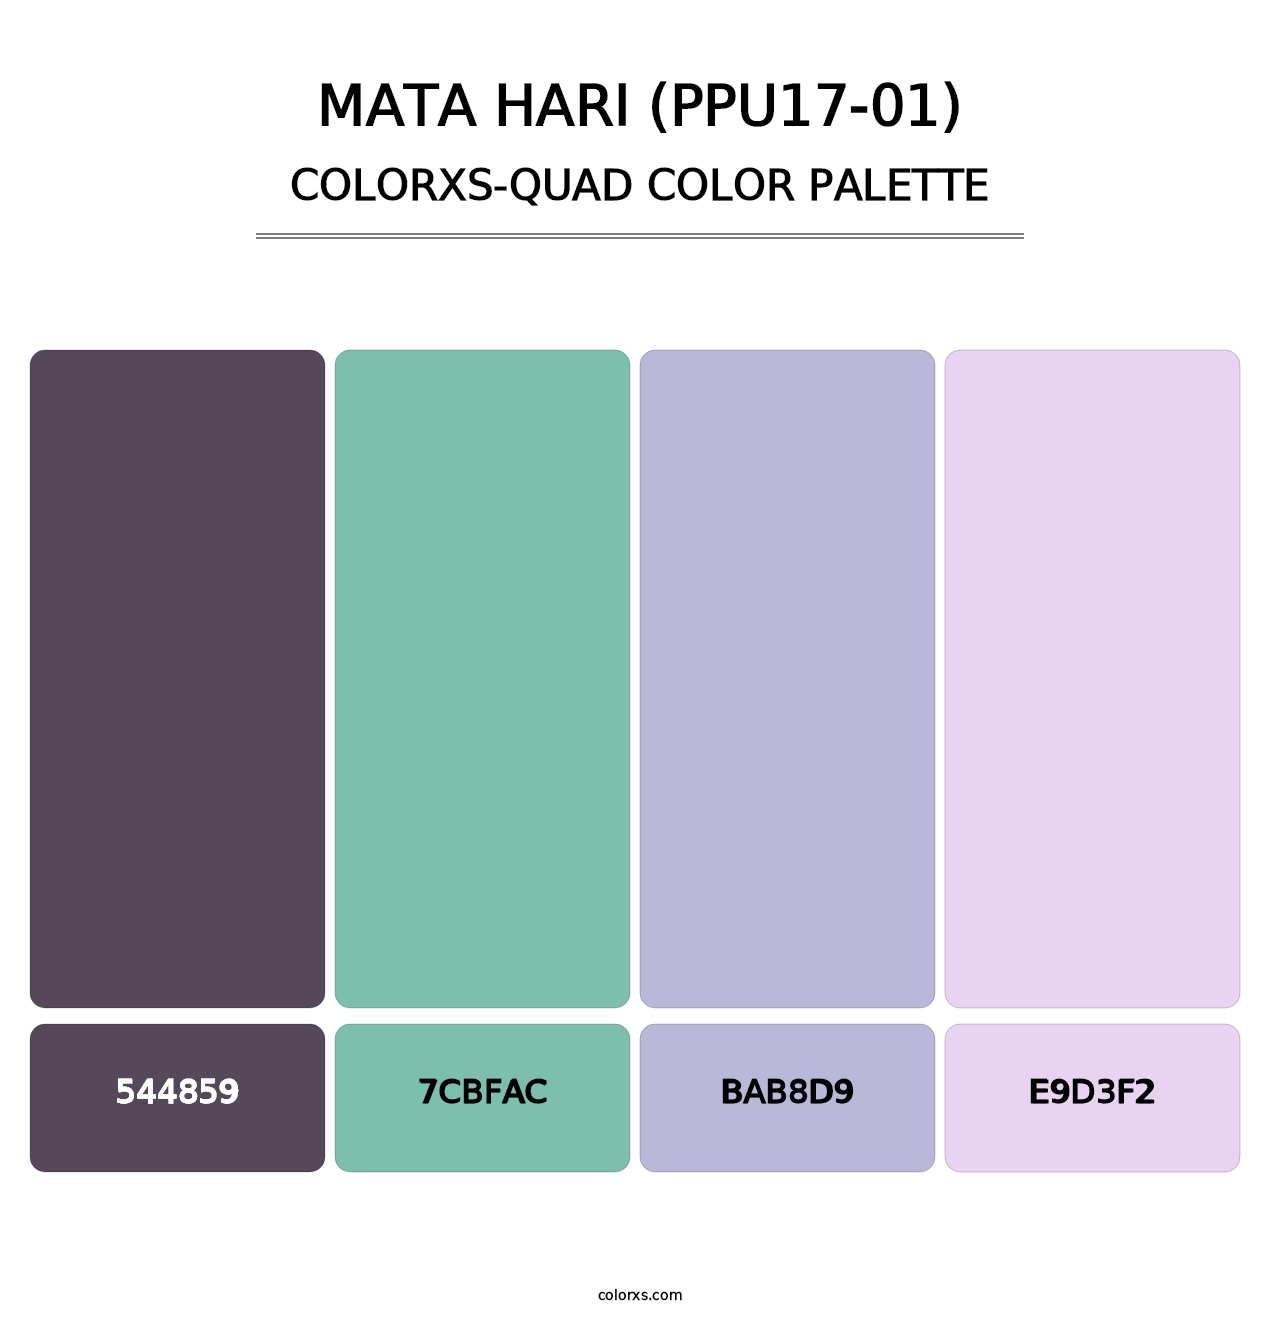 Mata Hari (PPU17-01) - Colorxs Quad Palette